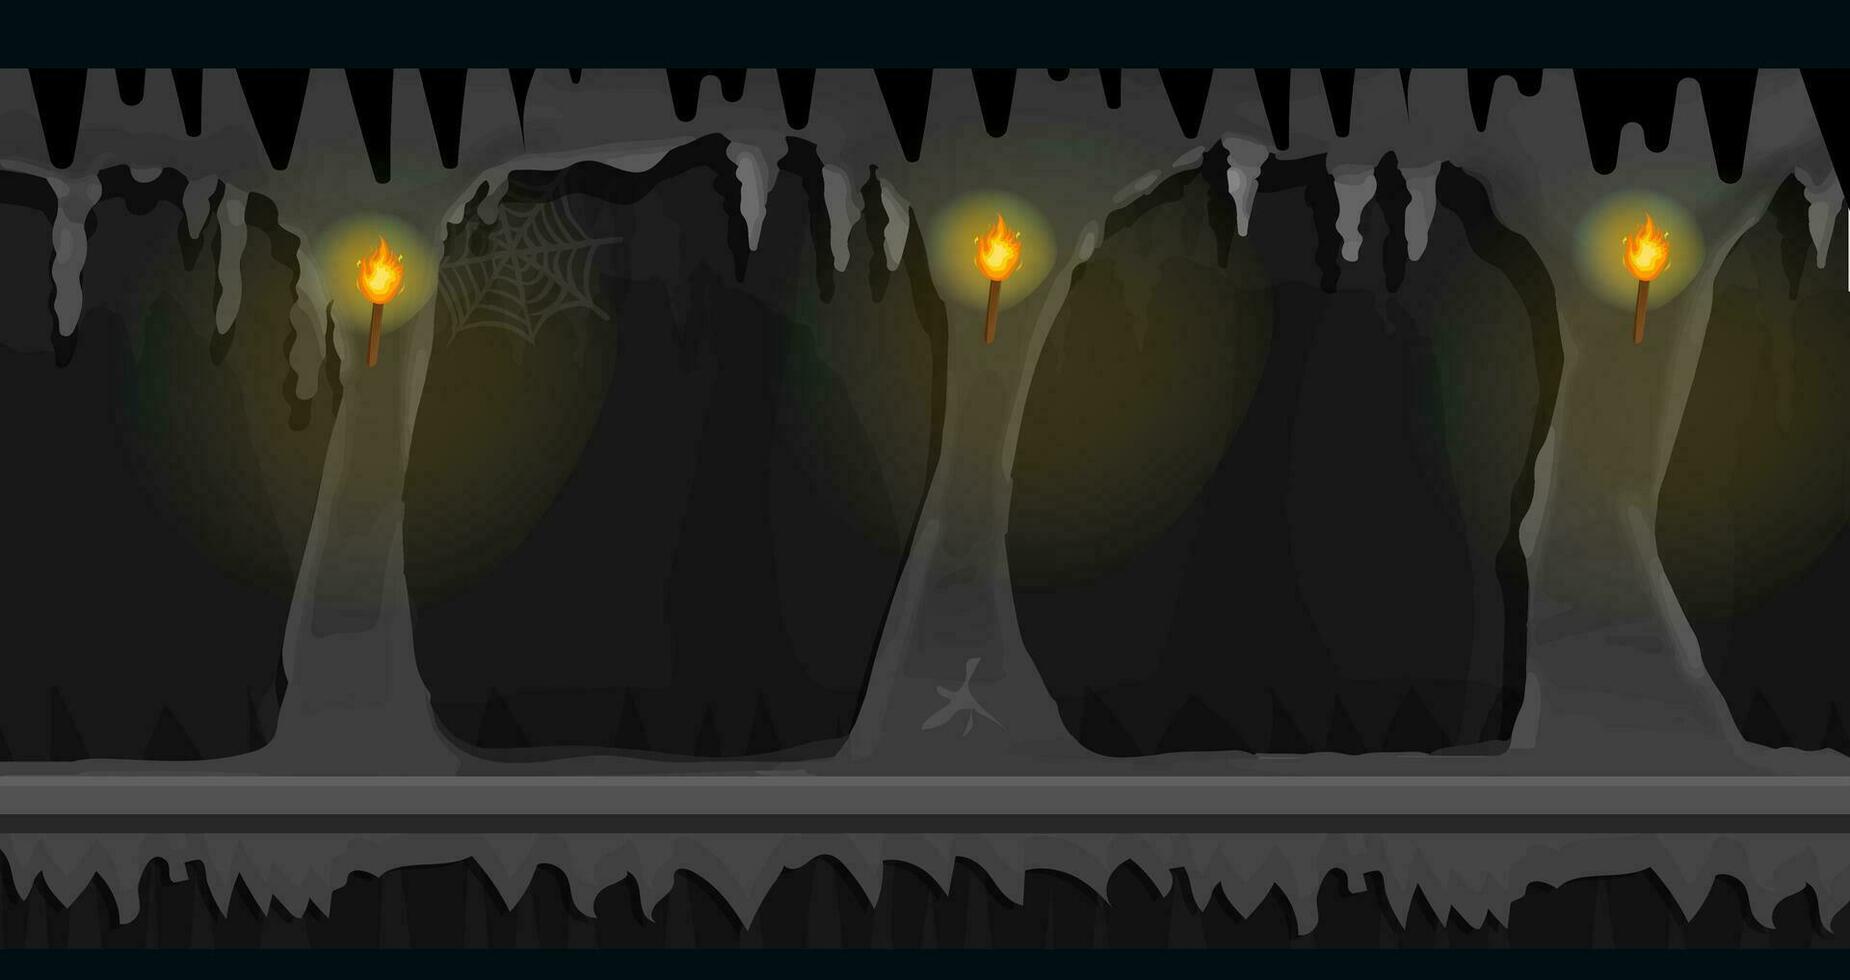 dunkel Höhle Spiel Hintergrund bebaubar horizontal, dunkel furchtbar leeren Platz mit Felsen, Beleuchtung Wände im Seite Sicht. zum 2d Spiele Standort. Vektor Illustration